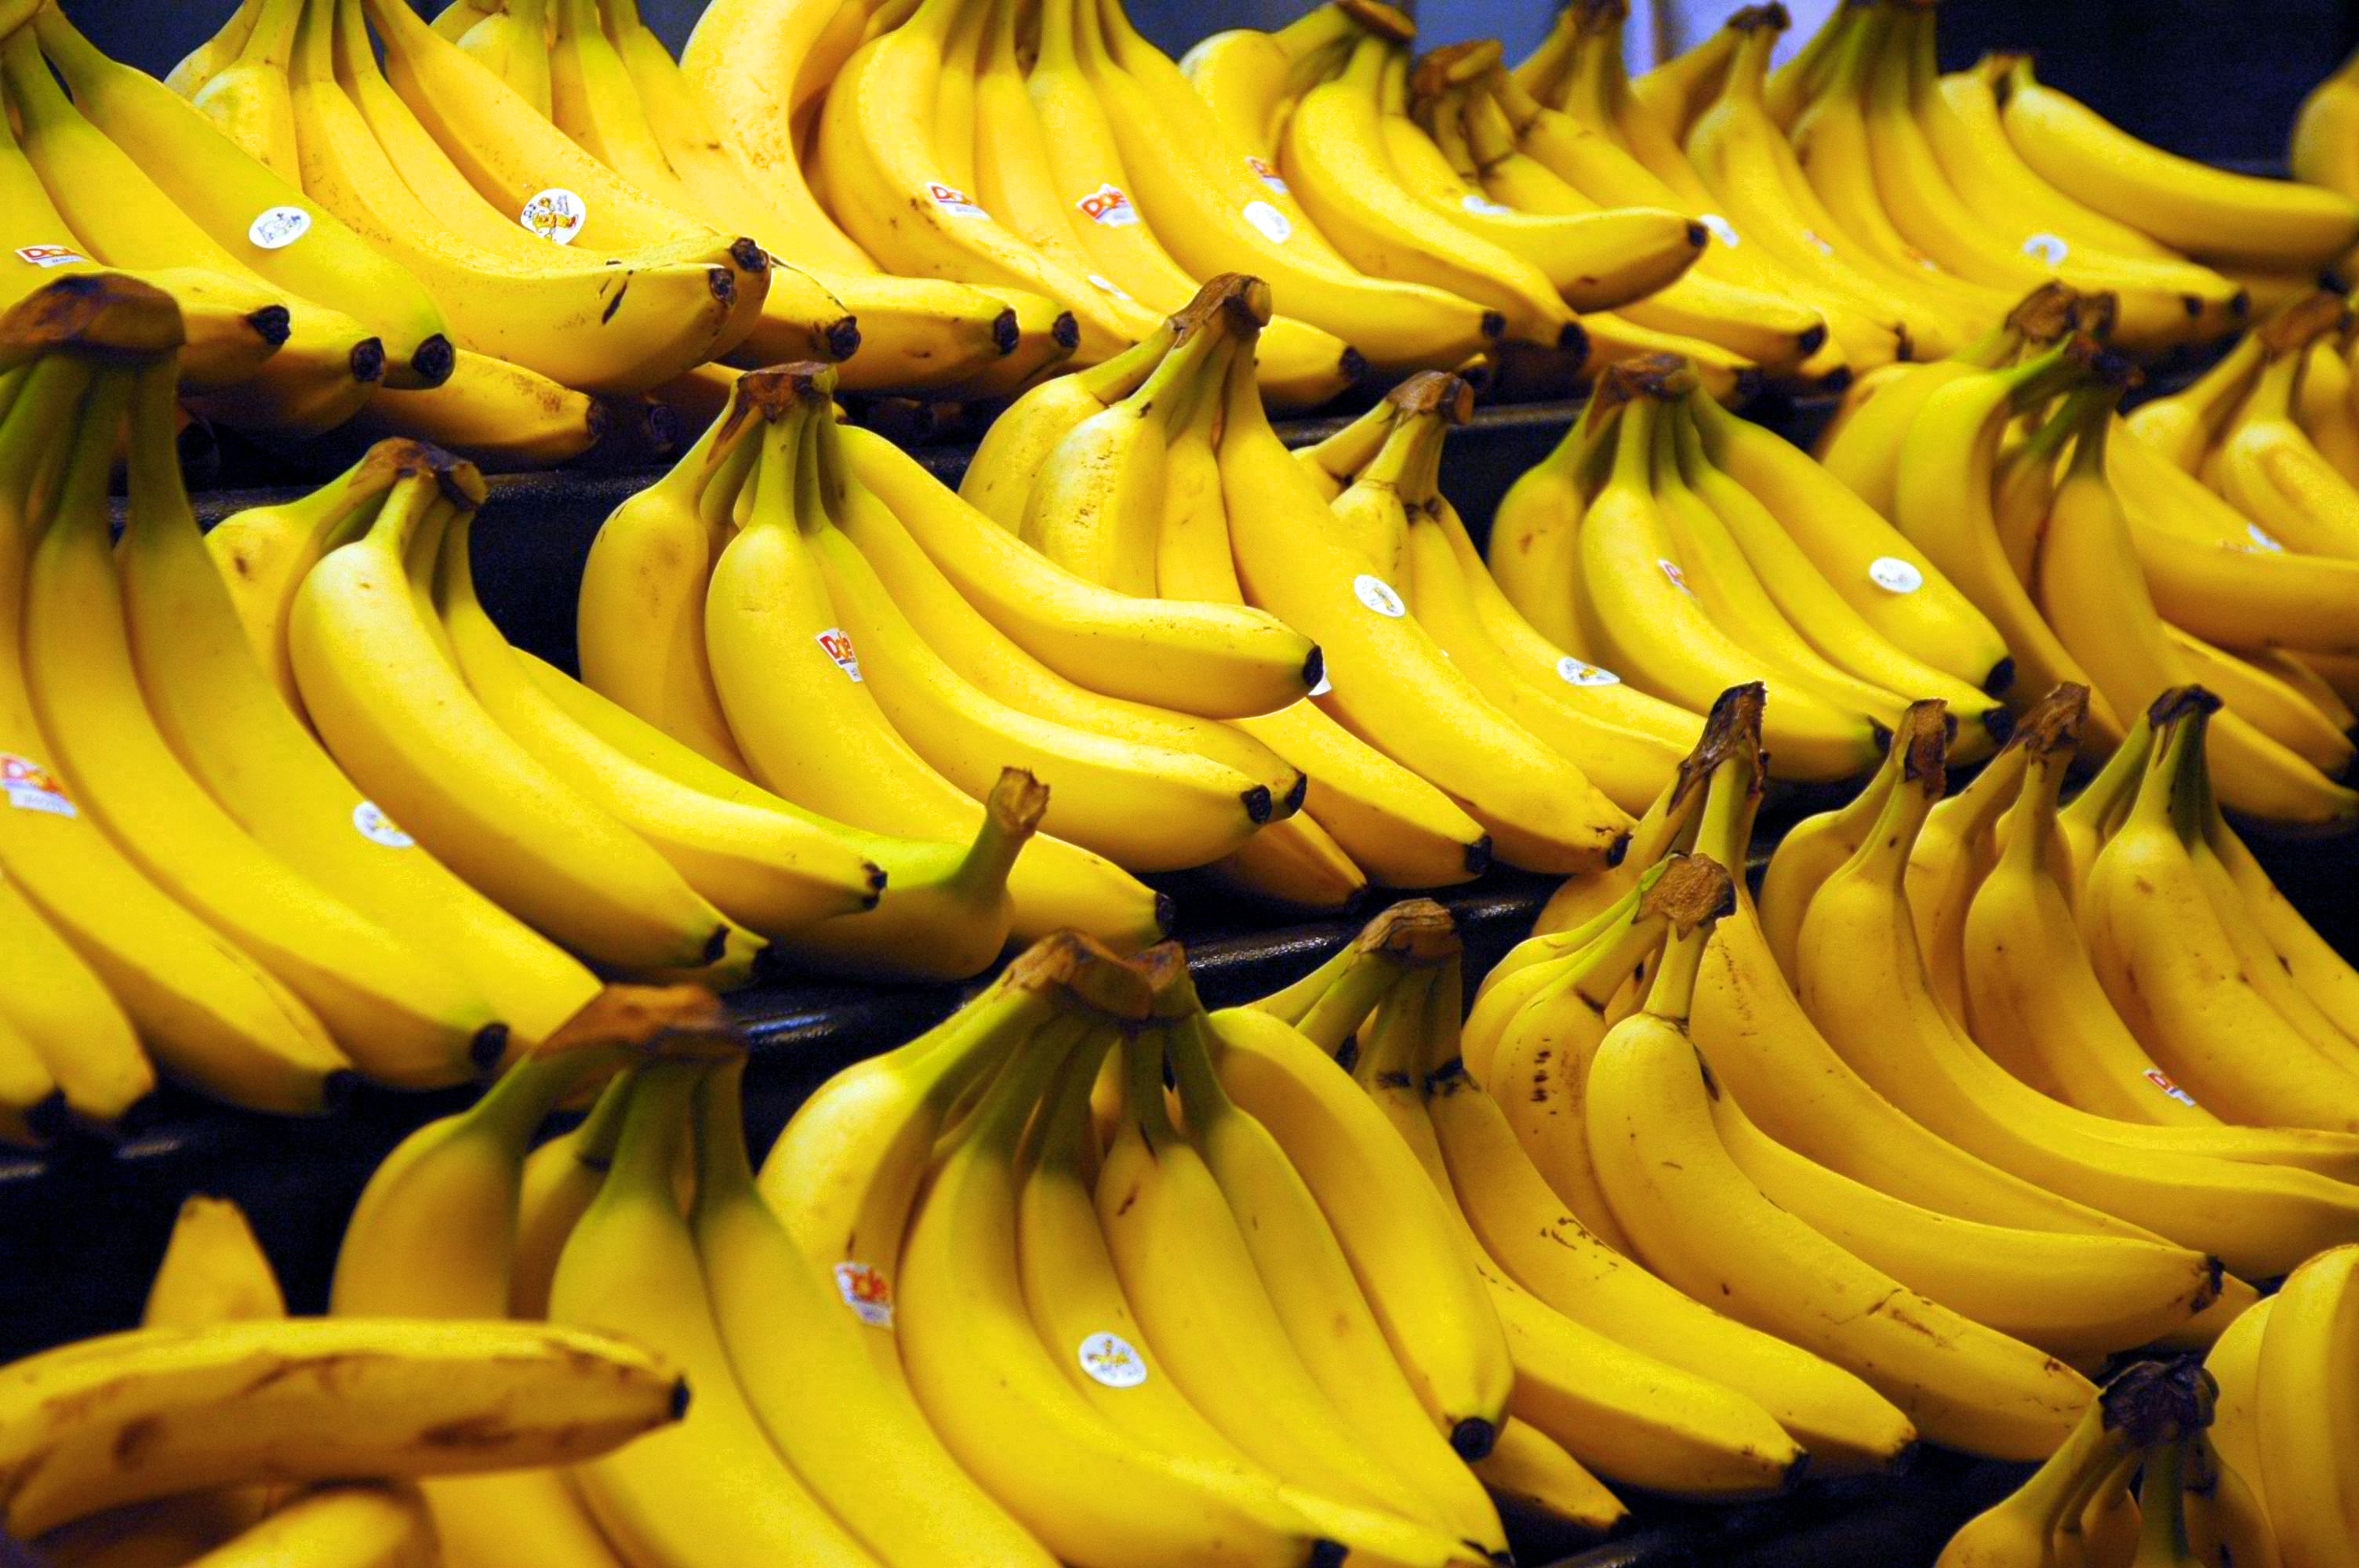 You'll Never Look at a Banana the Same Again | Third Monk image 14